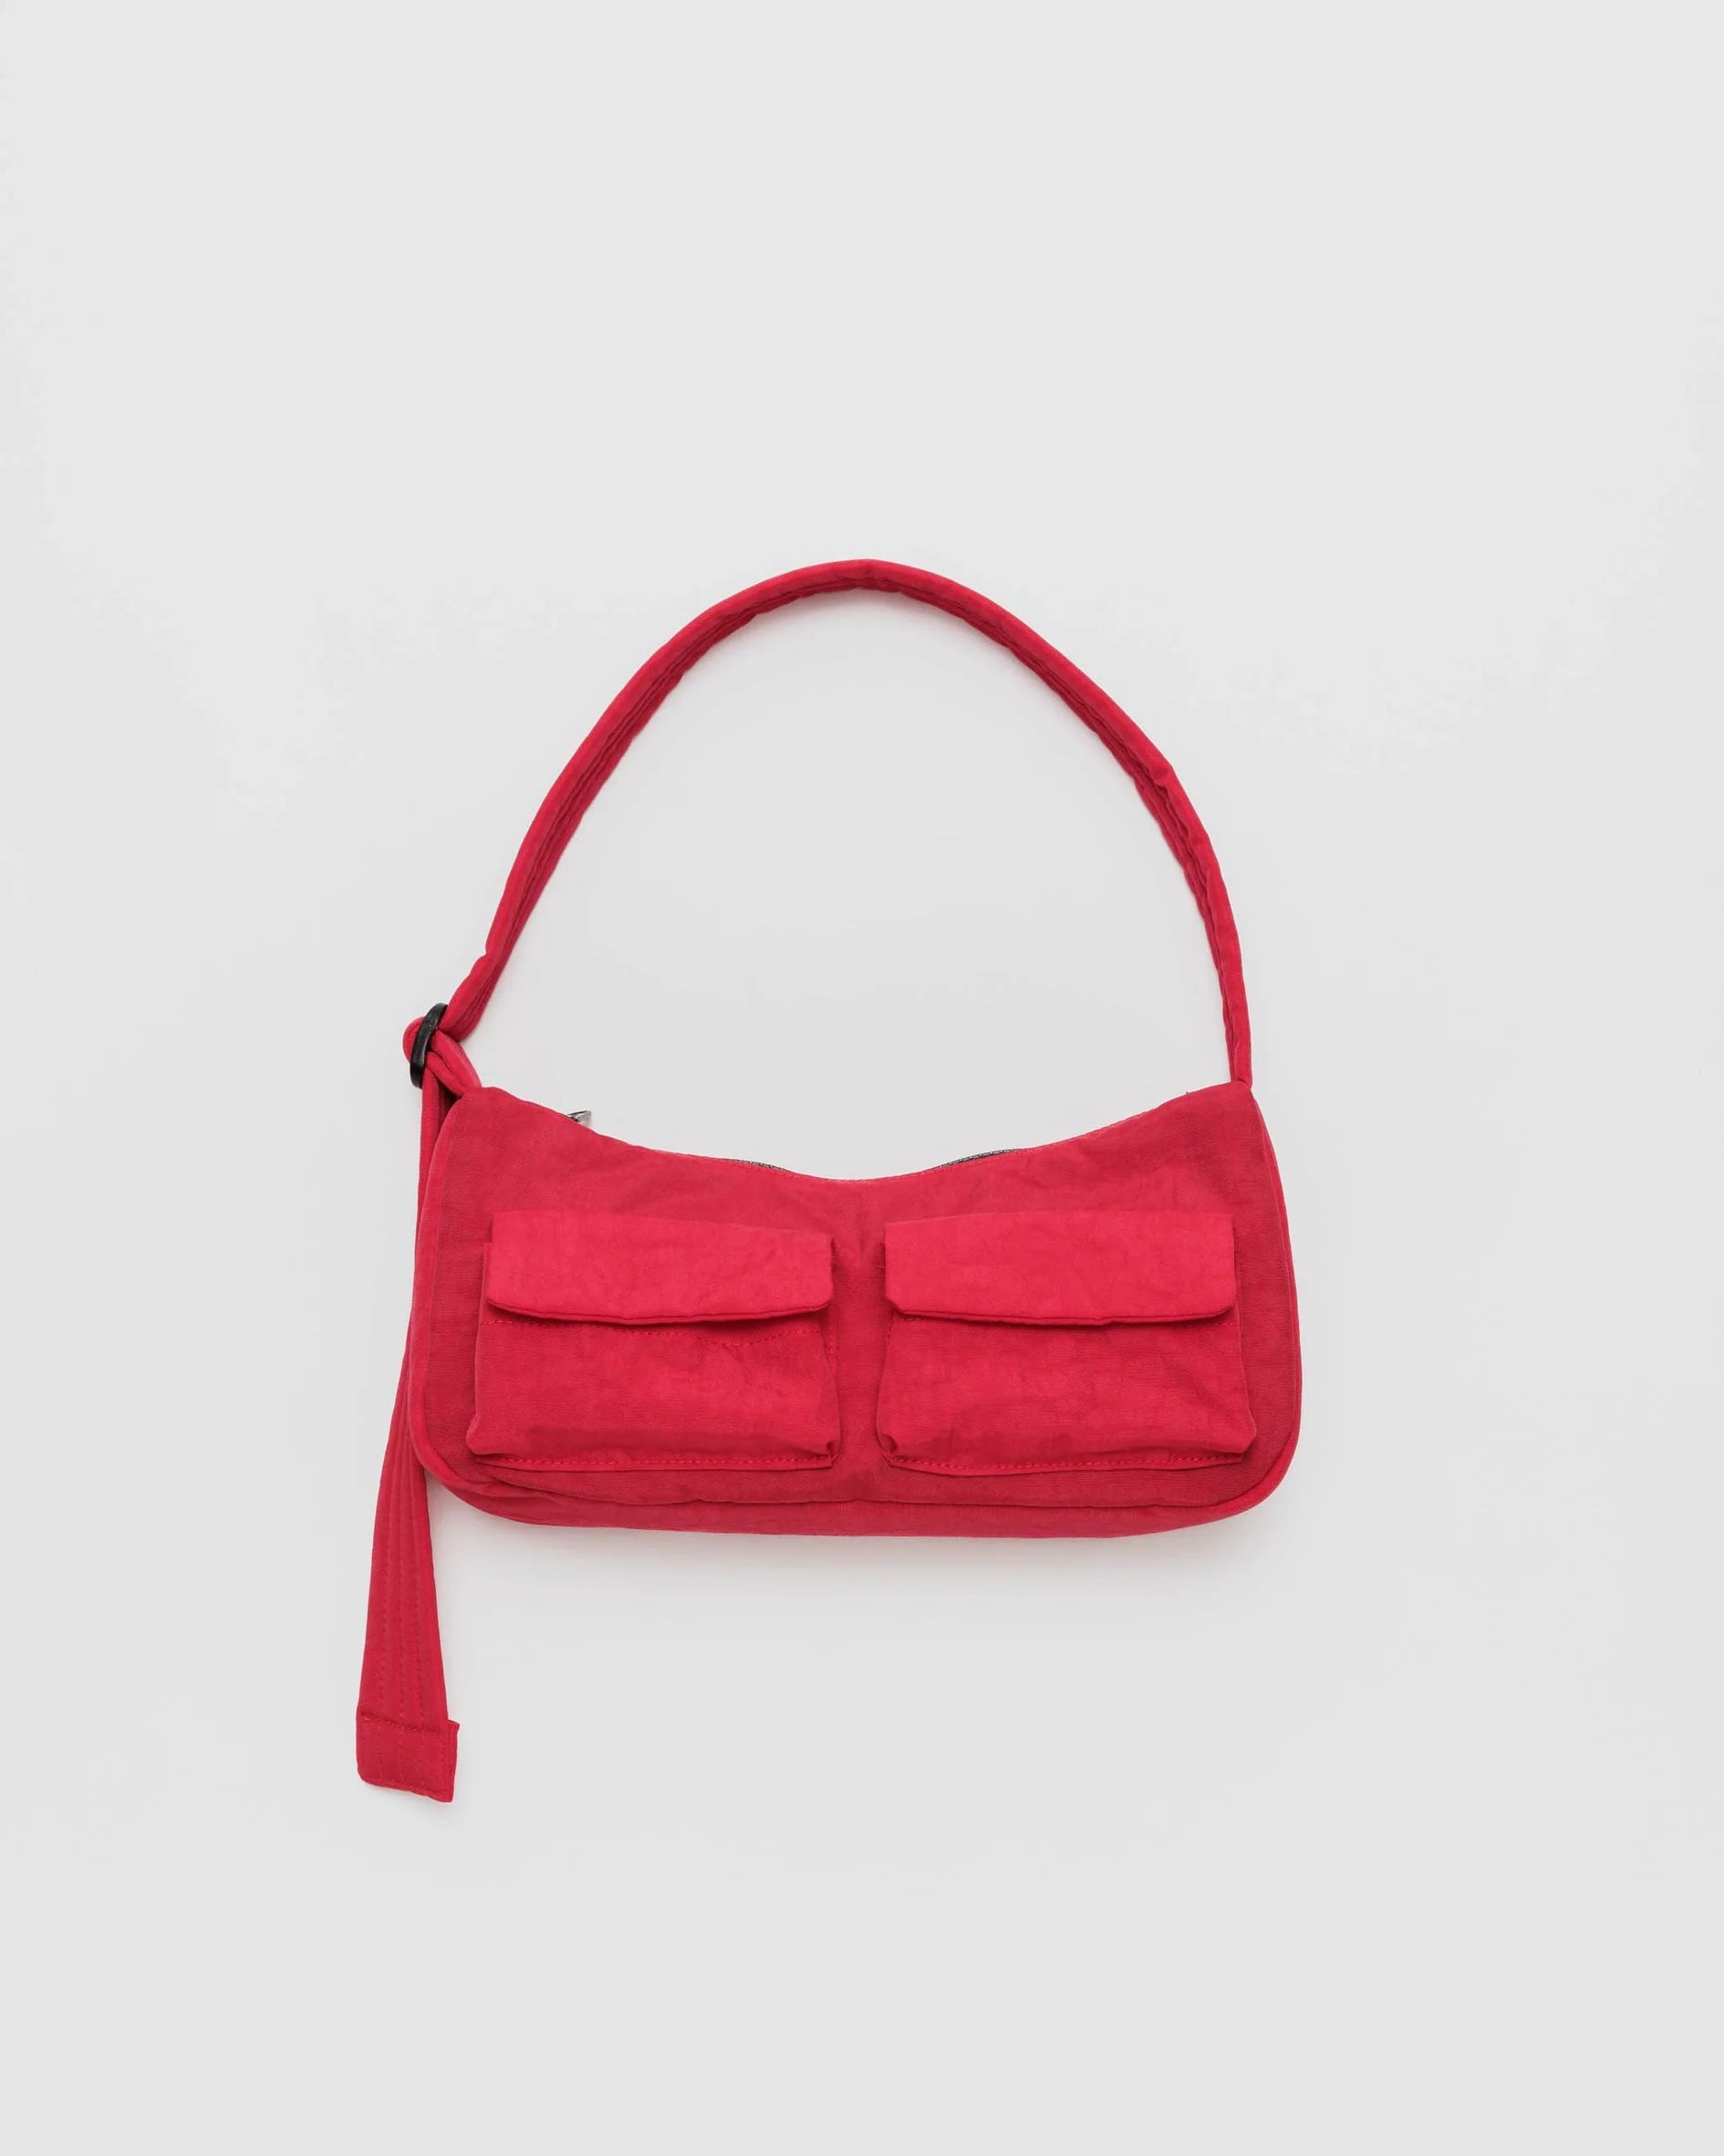 BAGGU cargo shoulder bag in candy apple red